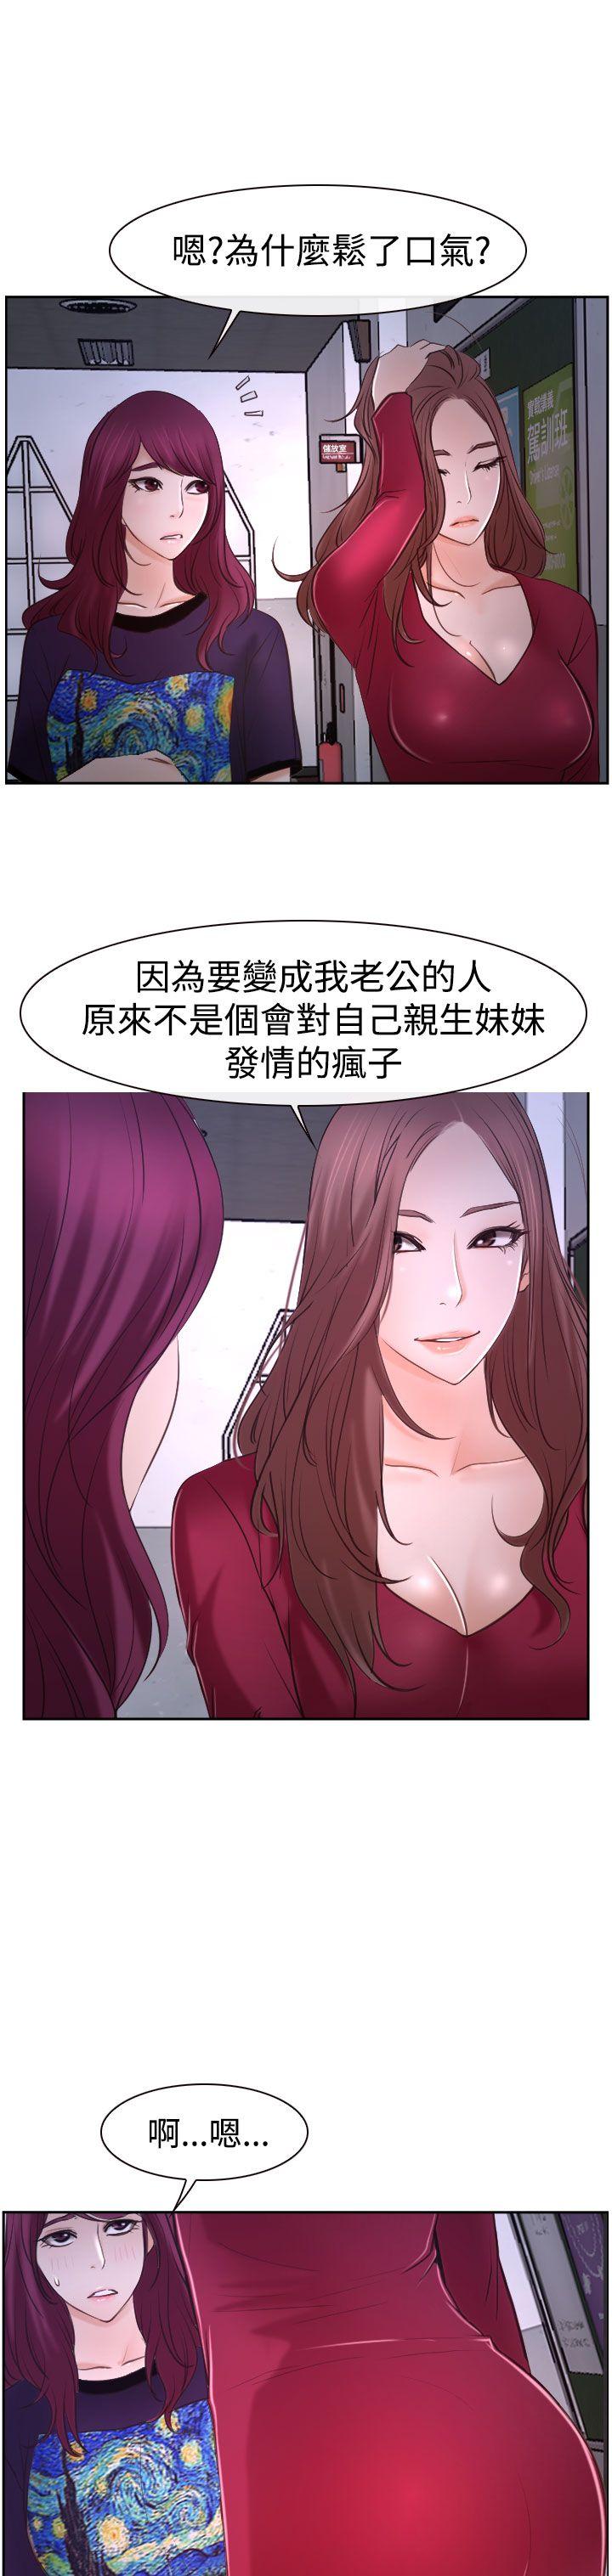 韩国污漫画 猜不透的心 第35话 33